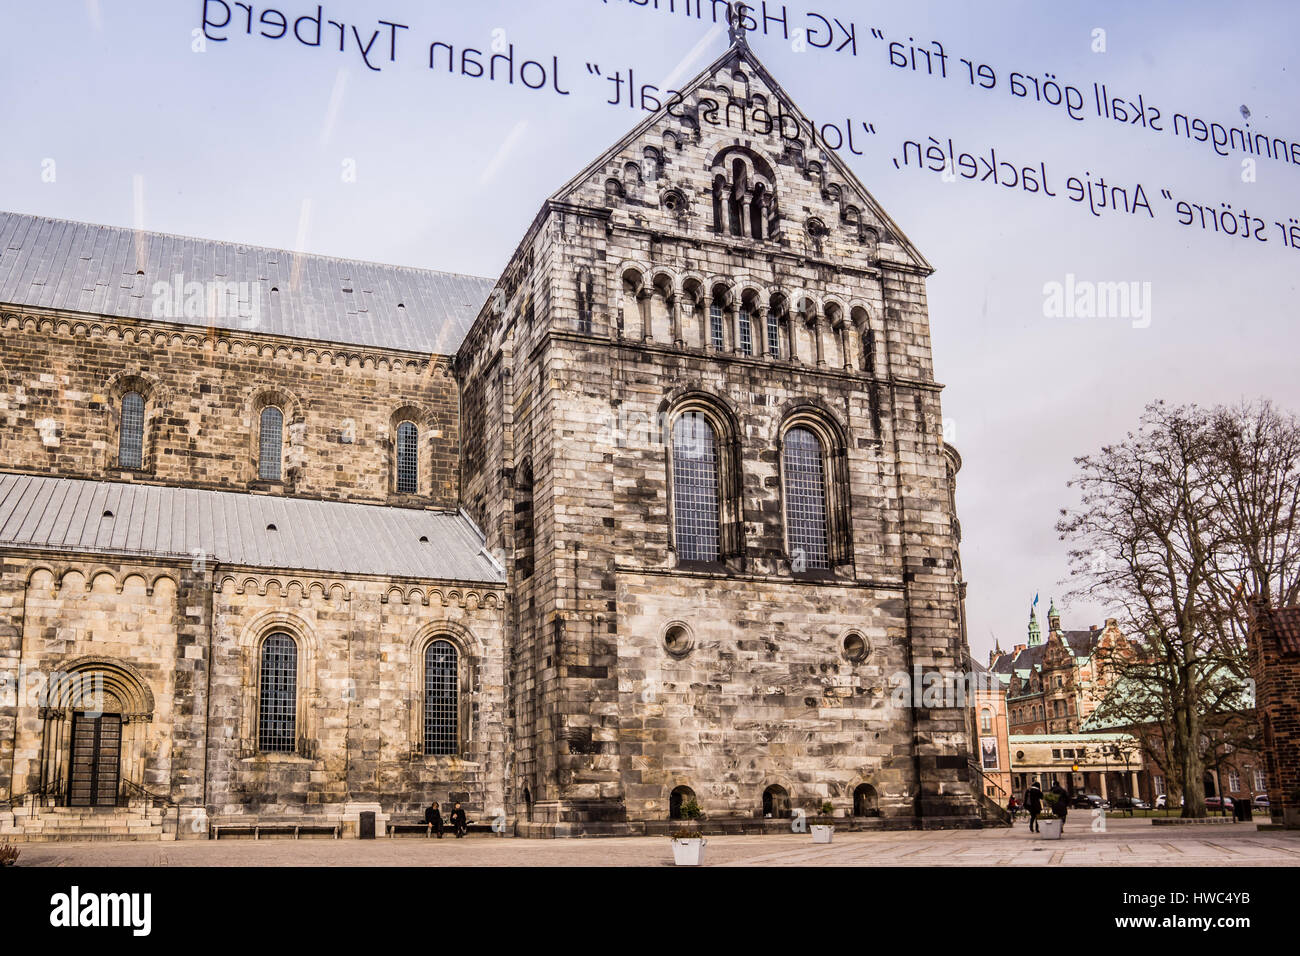 Catedral de Lund vistos a través de una ventana en el foro, la catedral de cristal es el lema del obispo Johan Tyrberg, Lund, Suecia, Mars 14, 2017 Foto de stock